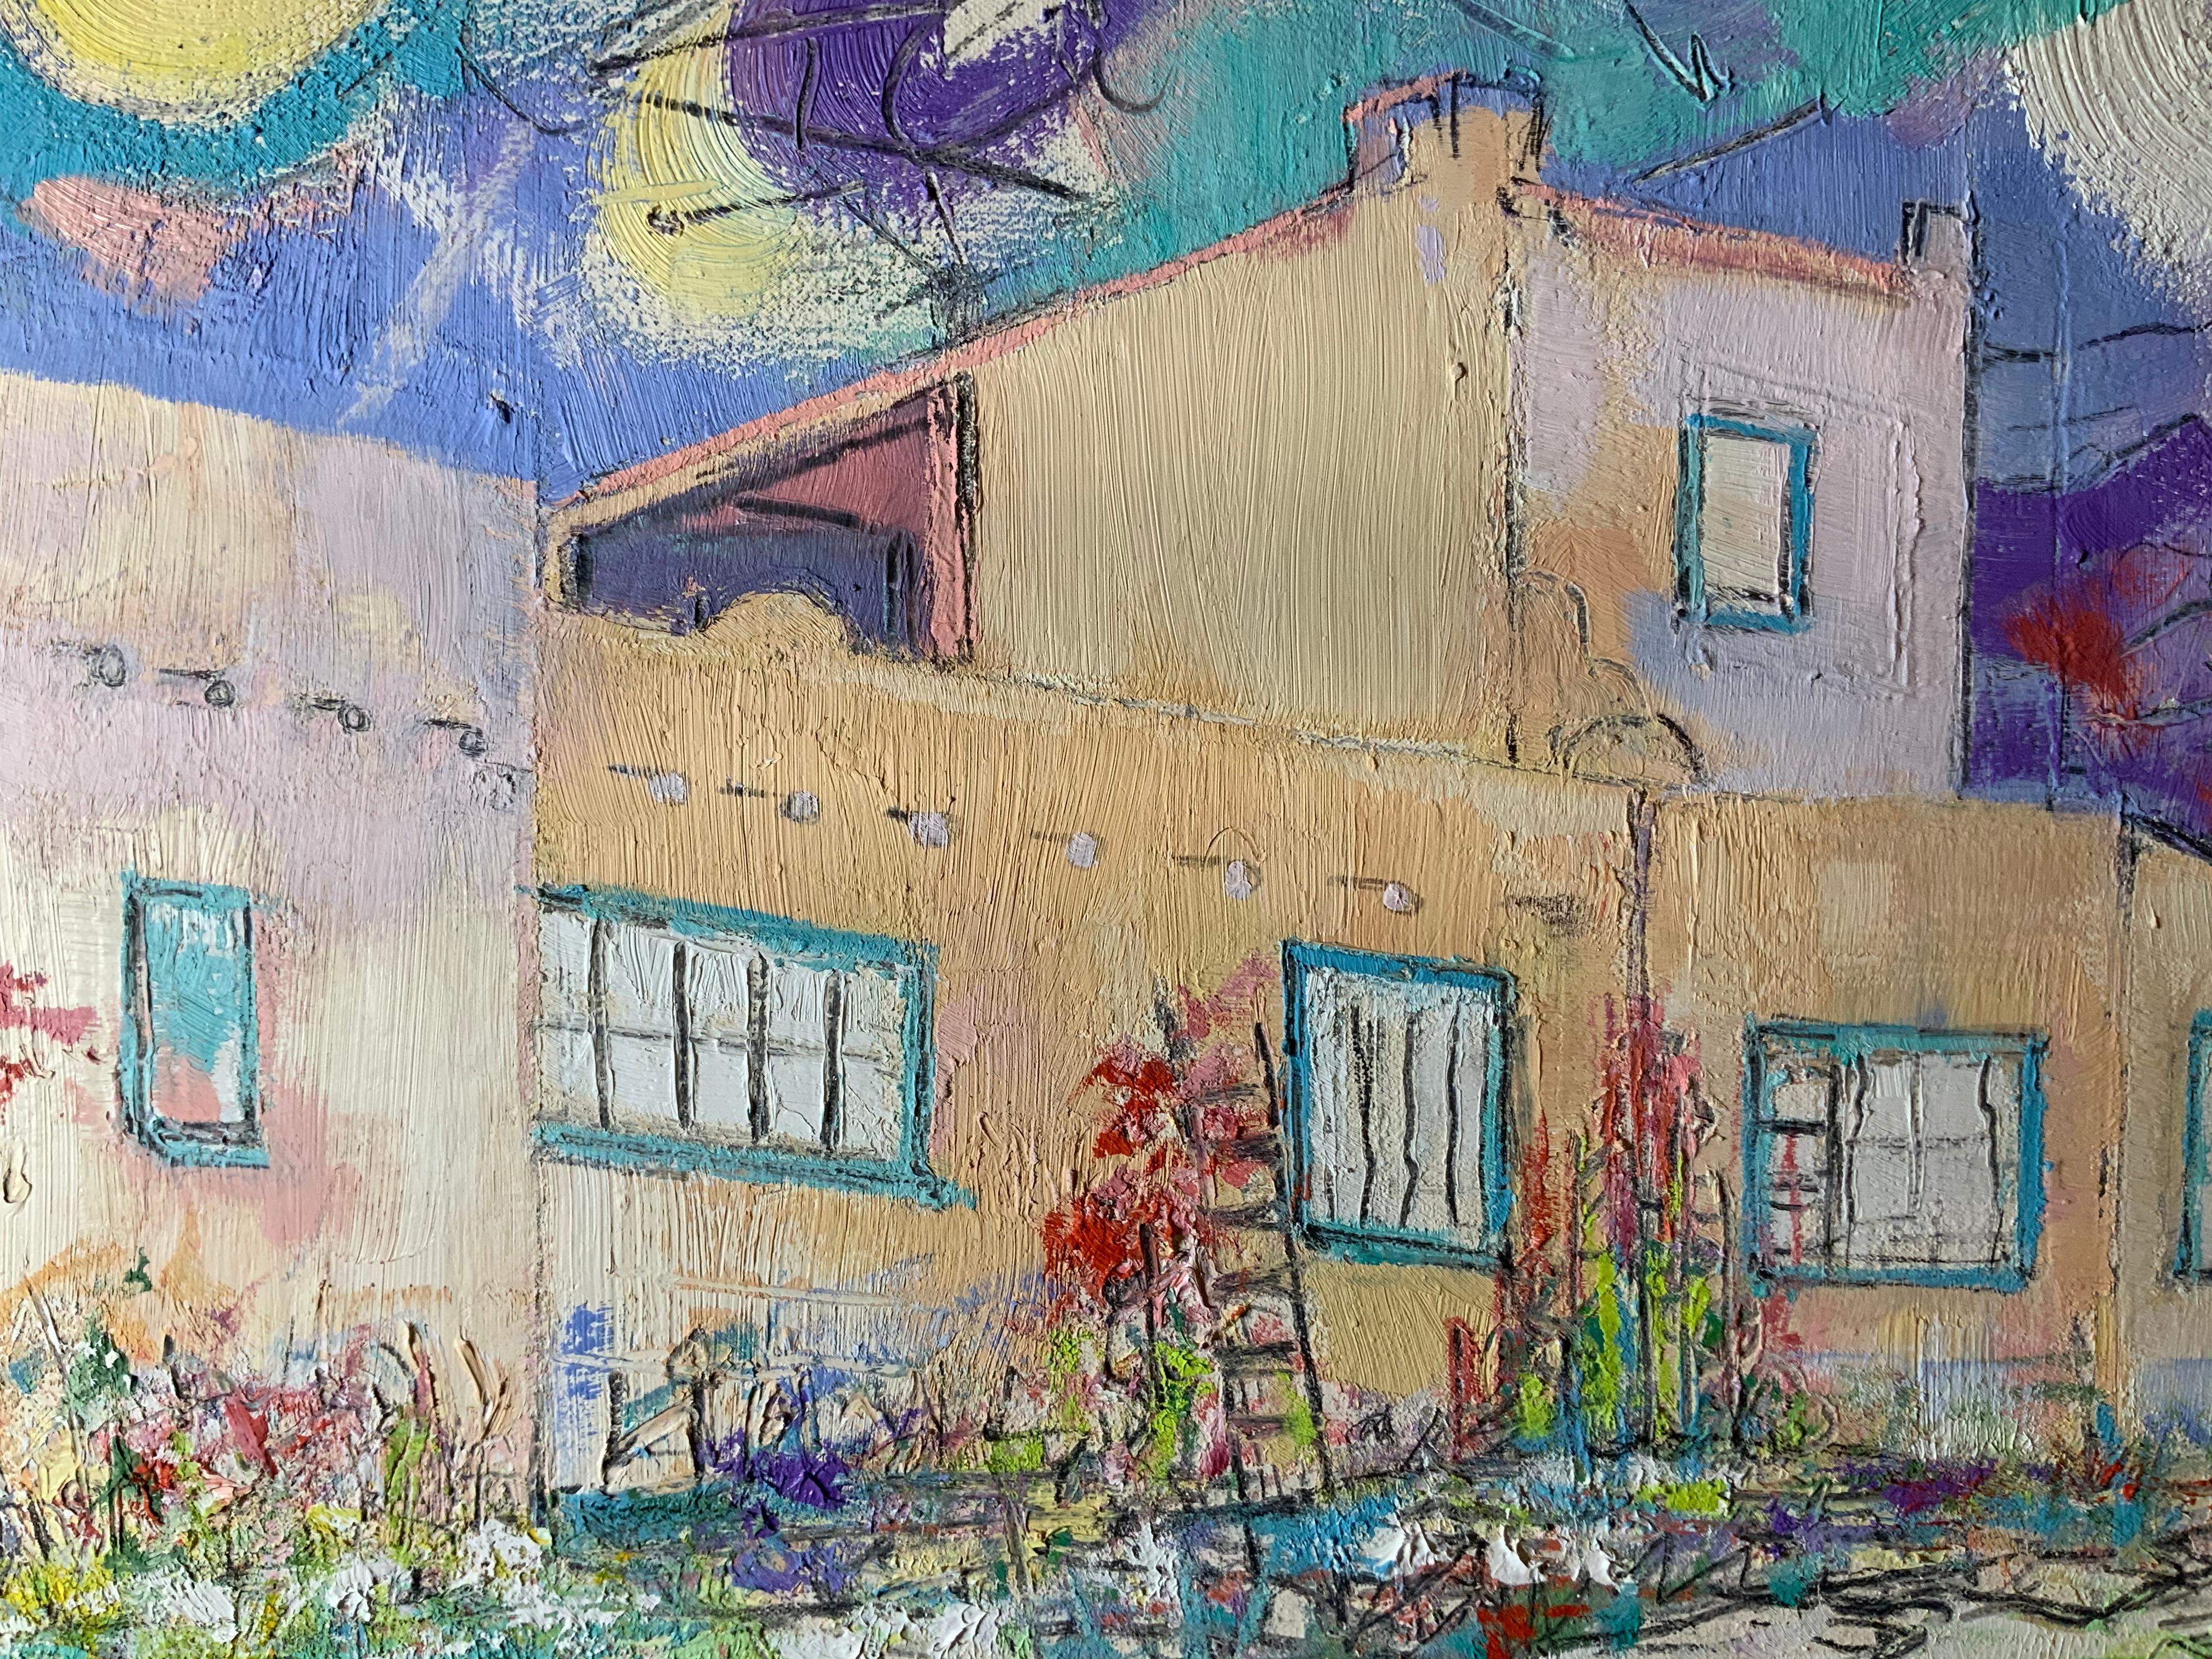 Laurie Hill Phelps est peintre depuis 37 ans à Taos, au Nouveau-Mexique. Ses aquarelles et ses huiles représentent les images colorées du nord du Nouveau-Mexique. Les peintures de Laurie ont une vie qui leur est propre. Ses œuvres font partie de